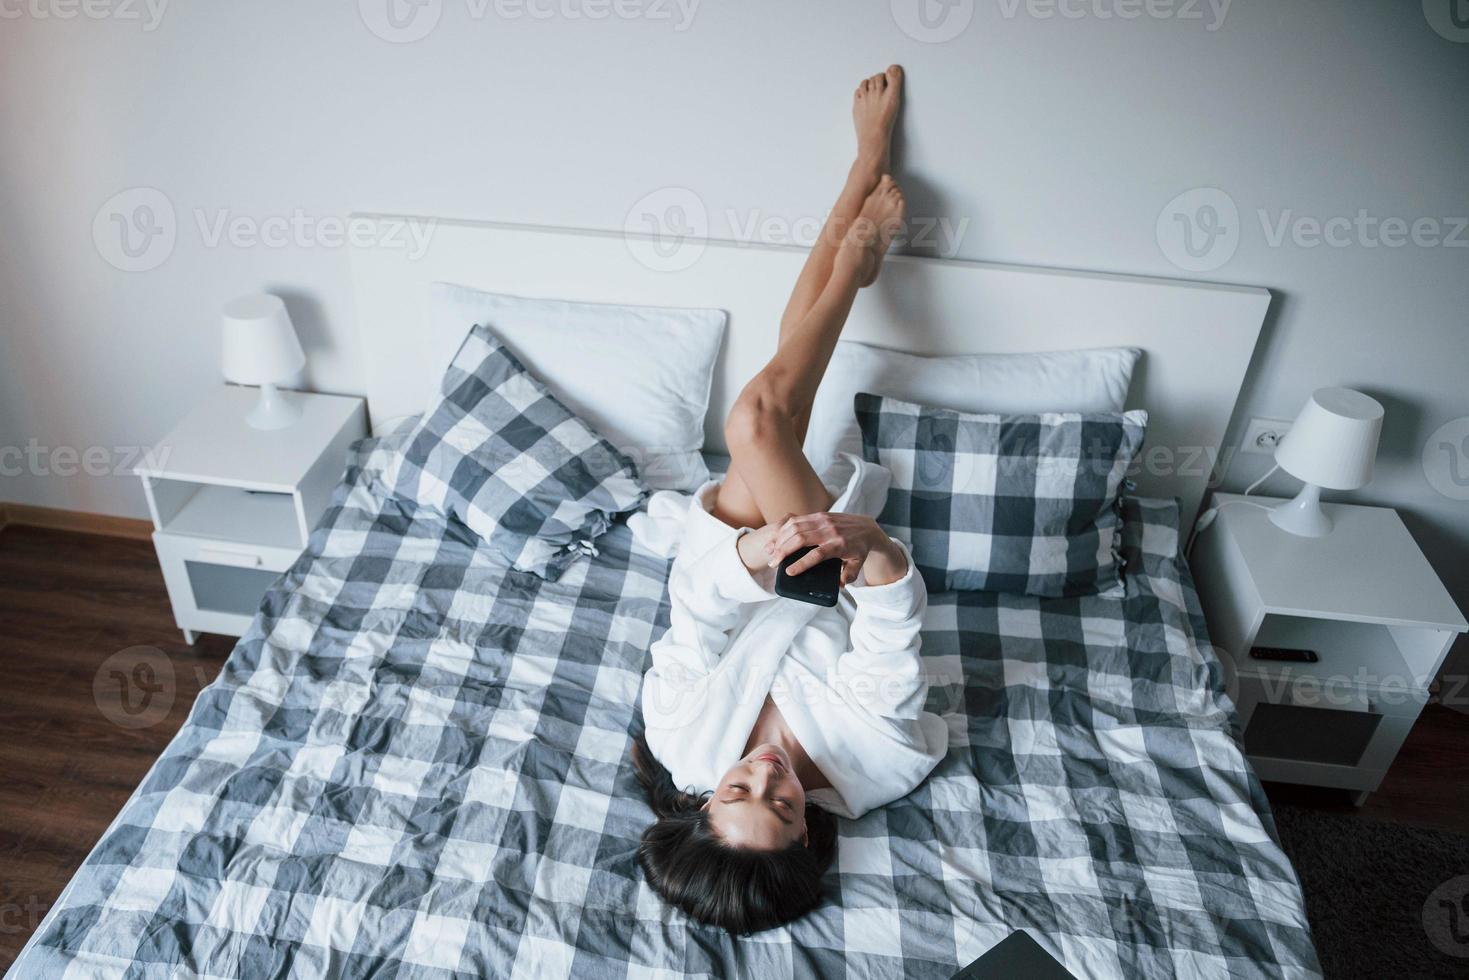 dia de preguiça. linda garota de roupão branco, deitada na cama na hora da manhã e usando smartphone foto